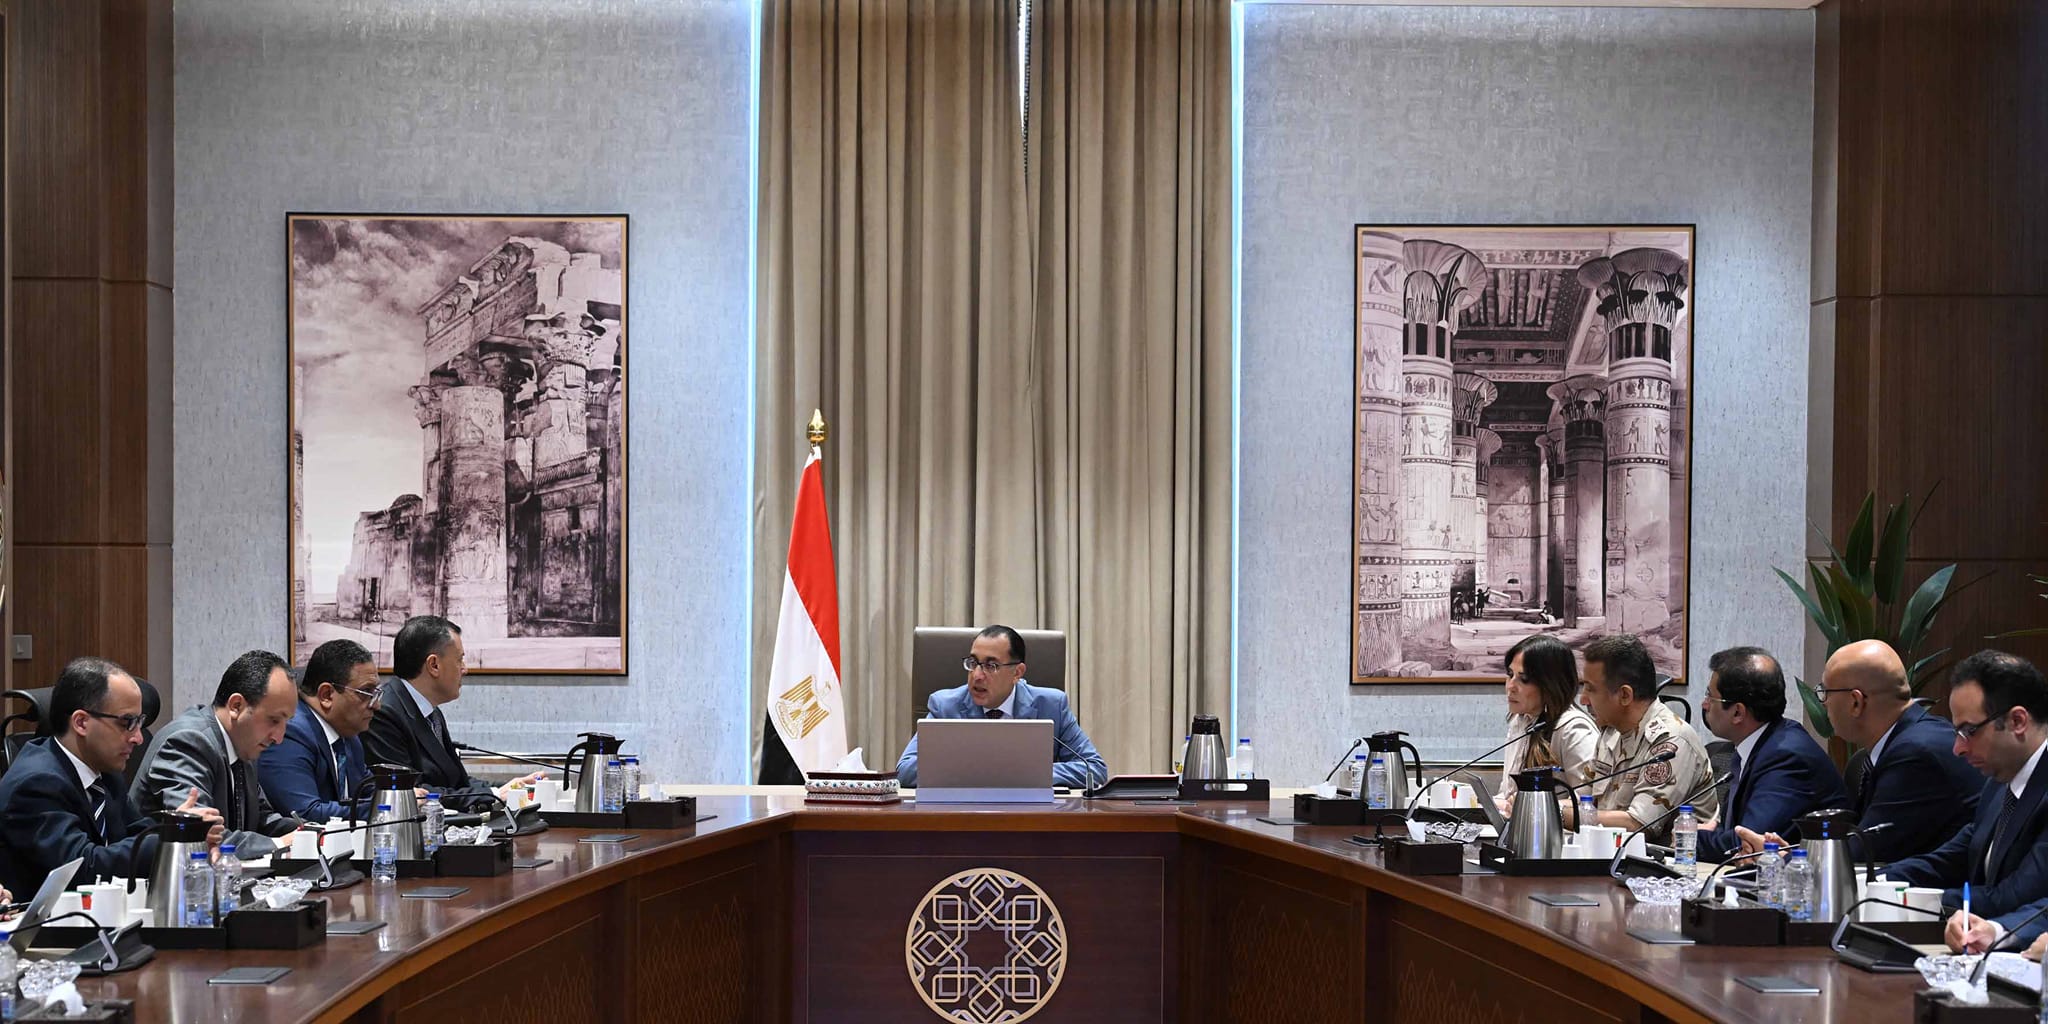   رئيس-الوزراء-يتابع-جاهزية-المتحف-المصري-الكبير-للافتتاحوتطوير-المناطق-المحيطة